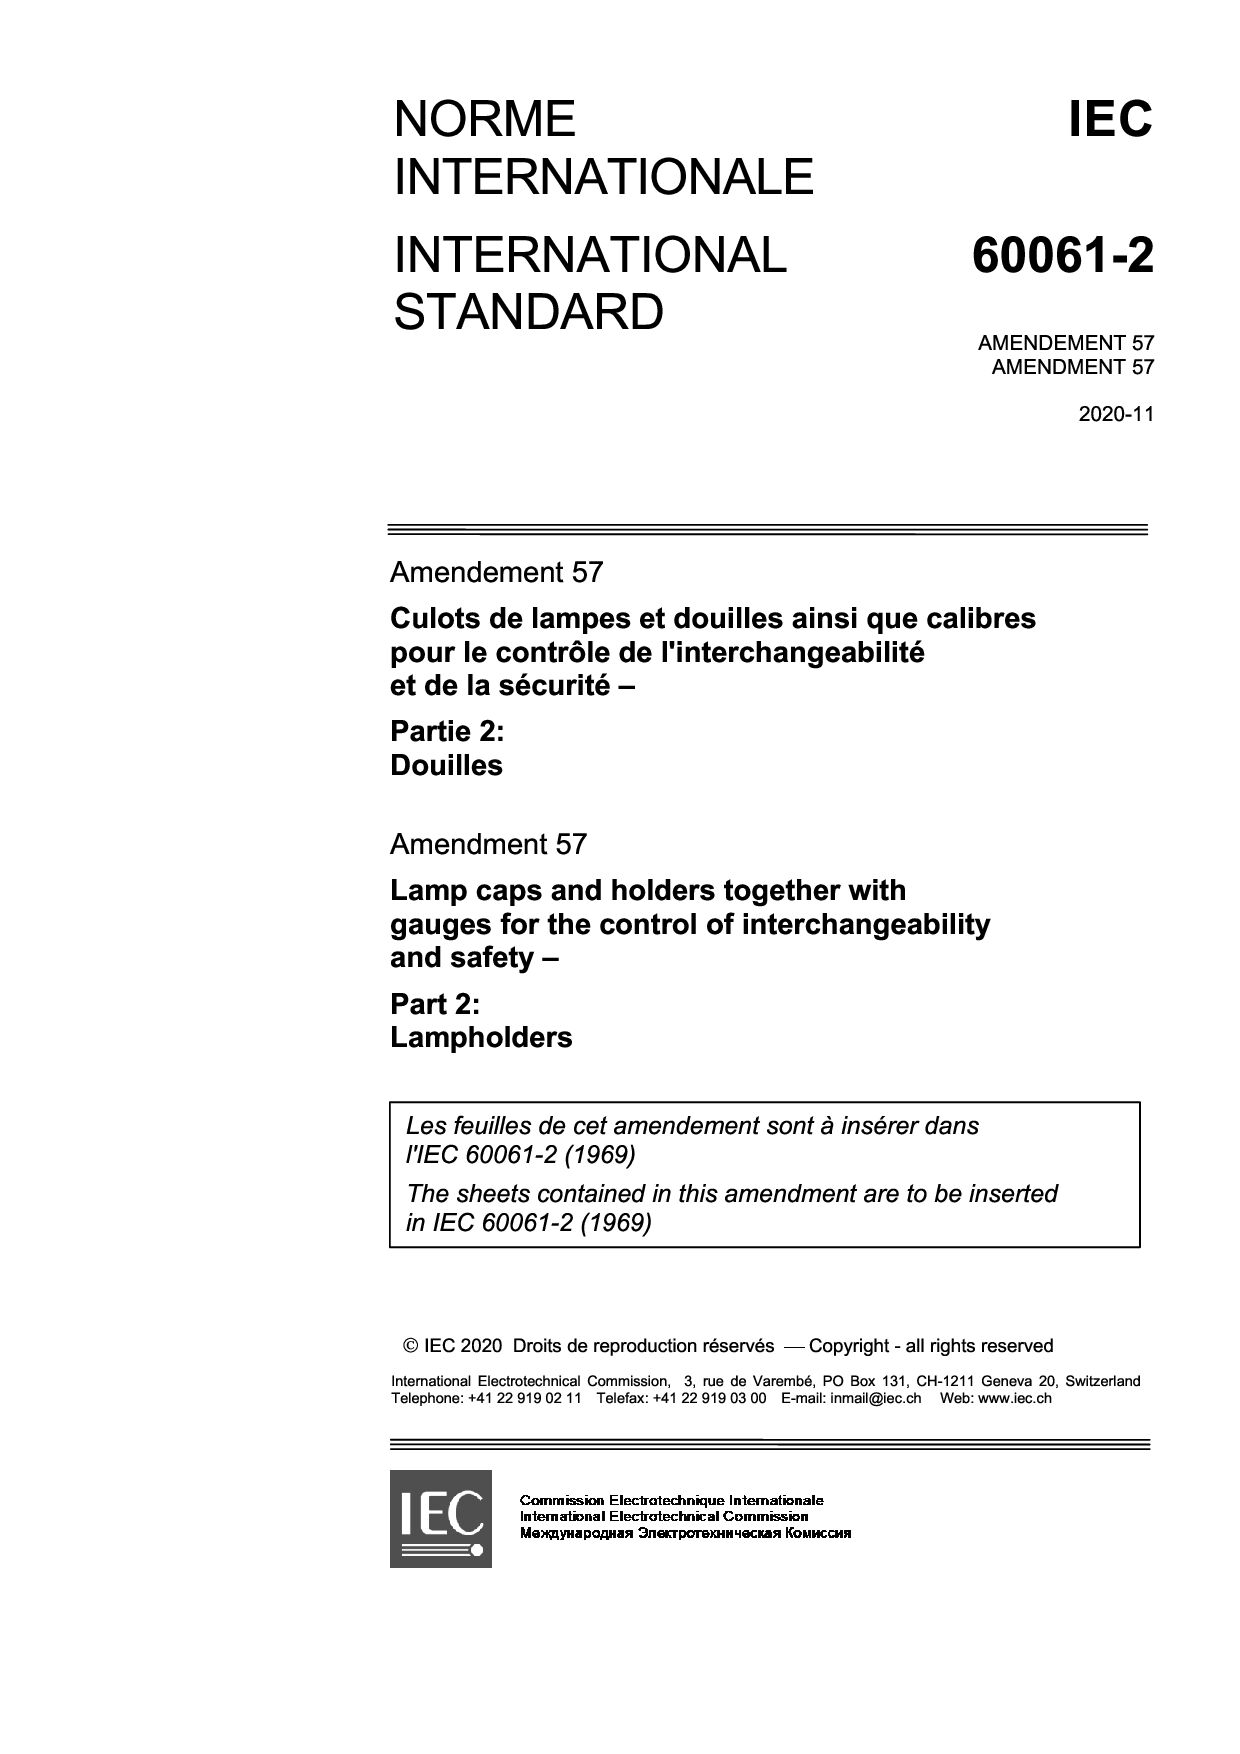 IEC 60061-2:1969/AMD57:2020